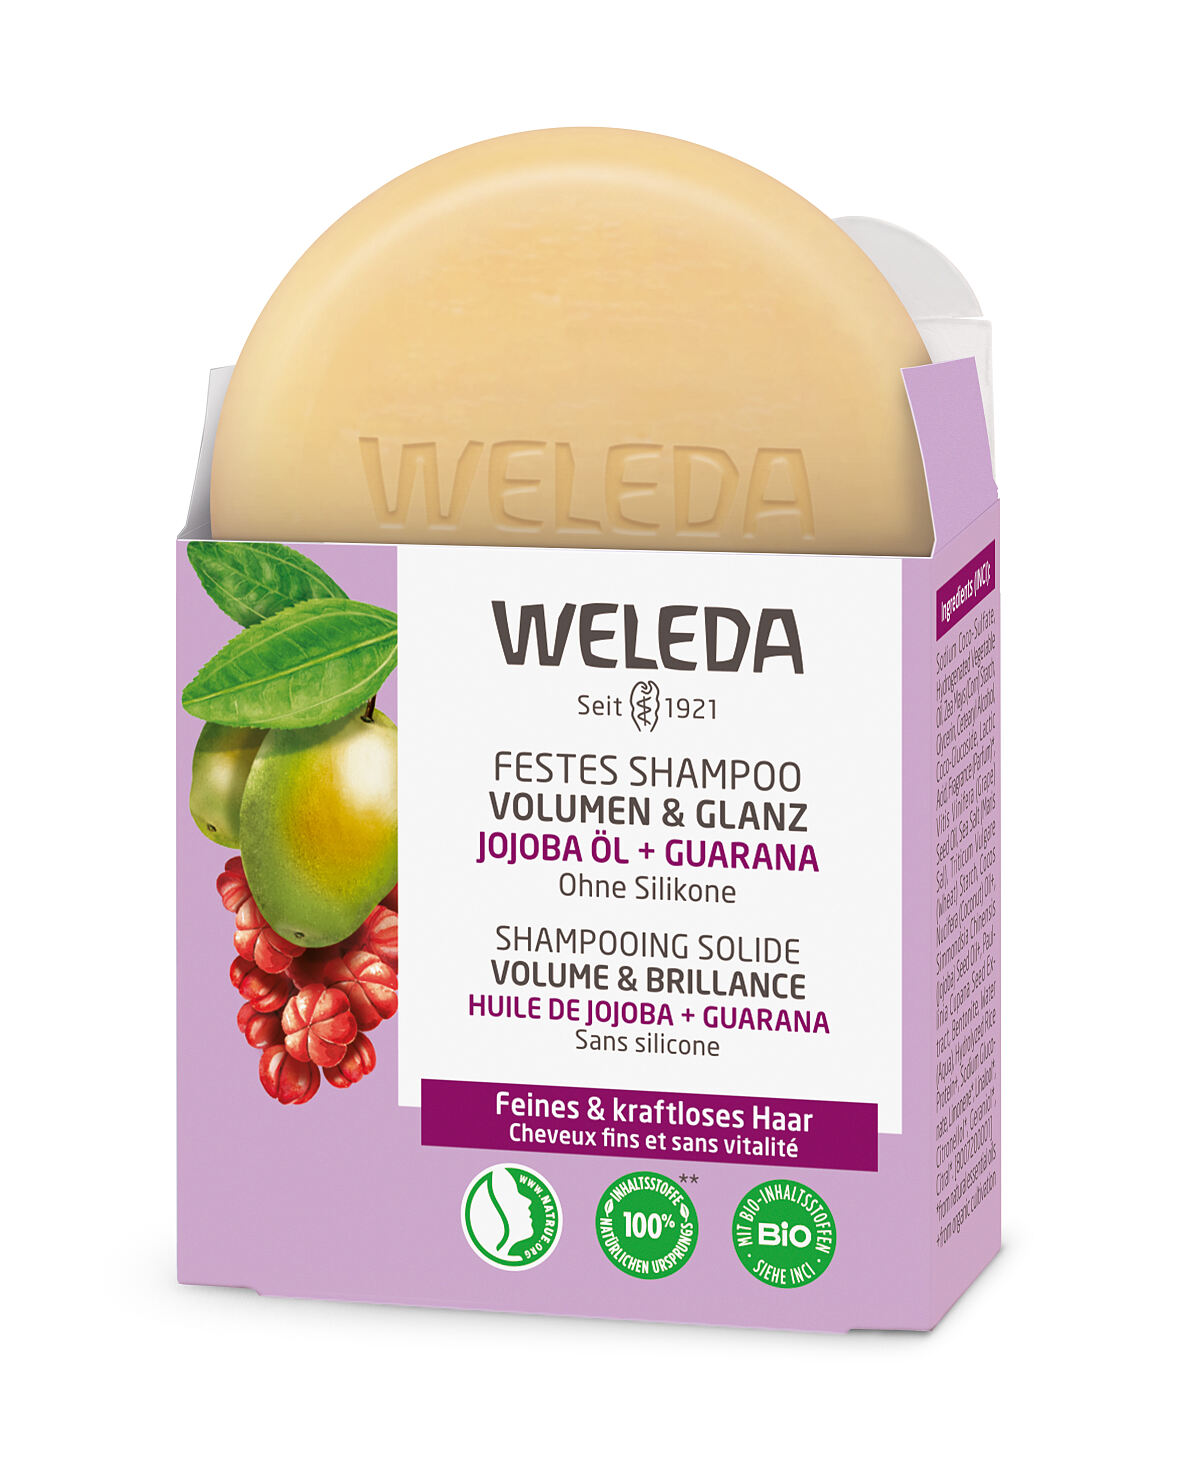 WELEDA_Festes Shampoo_Volumen & Glanz_50 g_UVP € 5,95